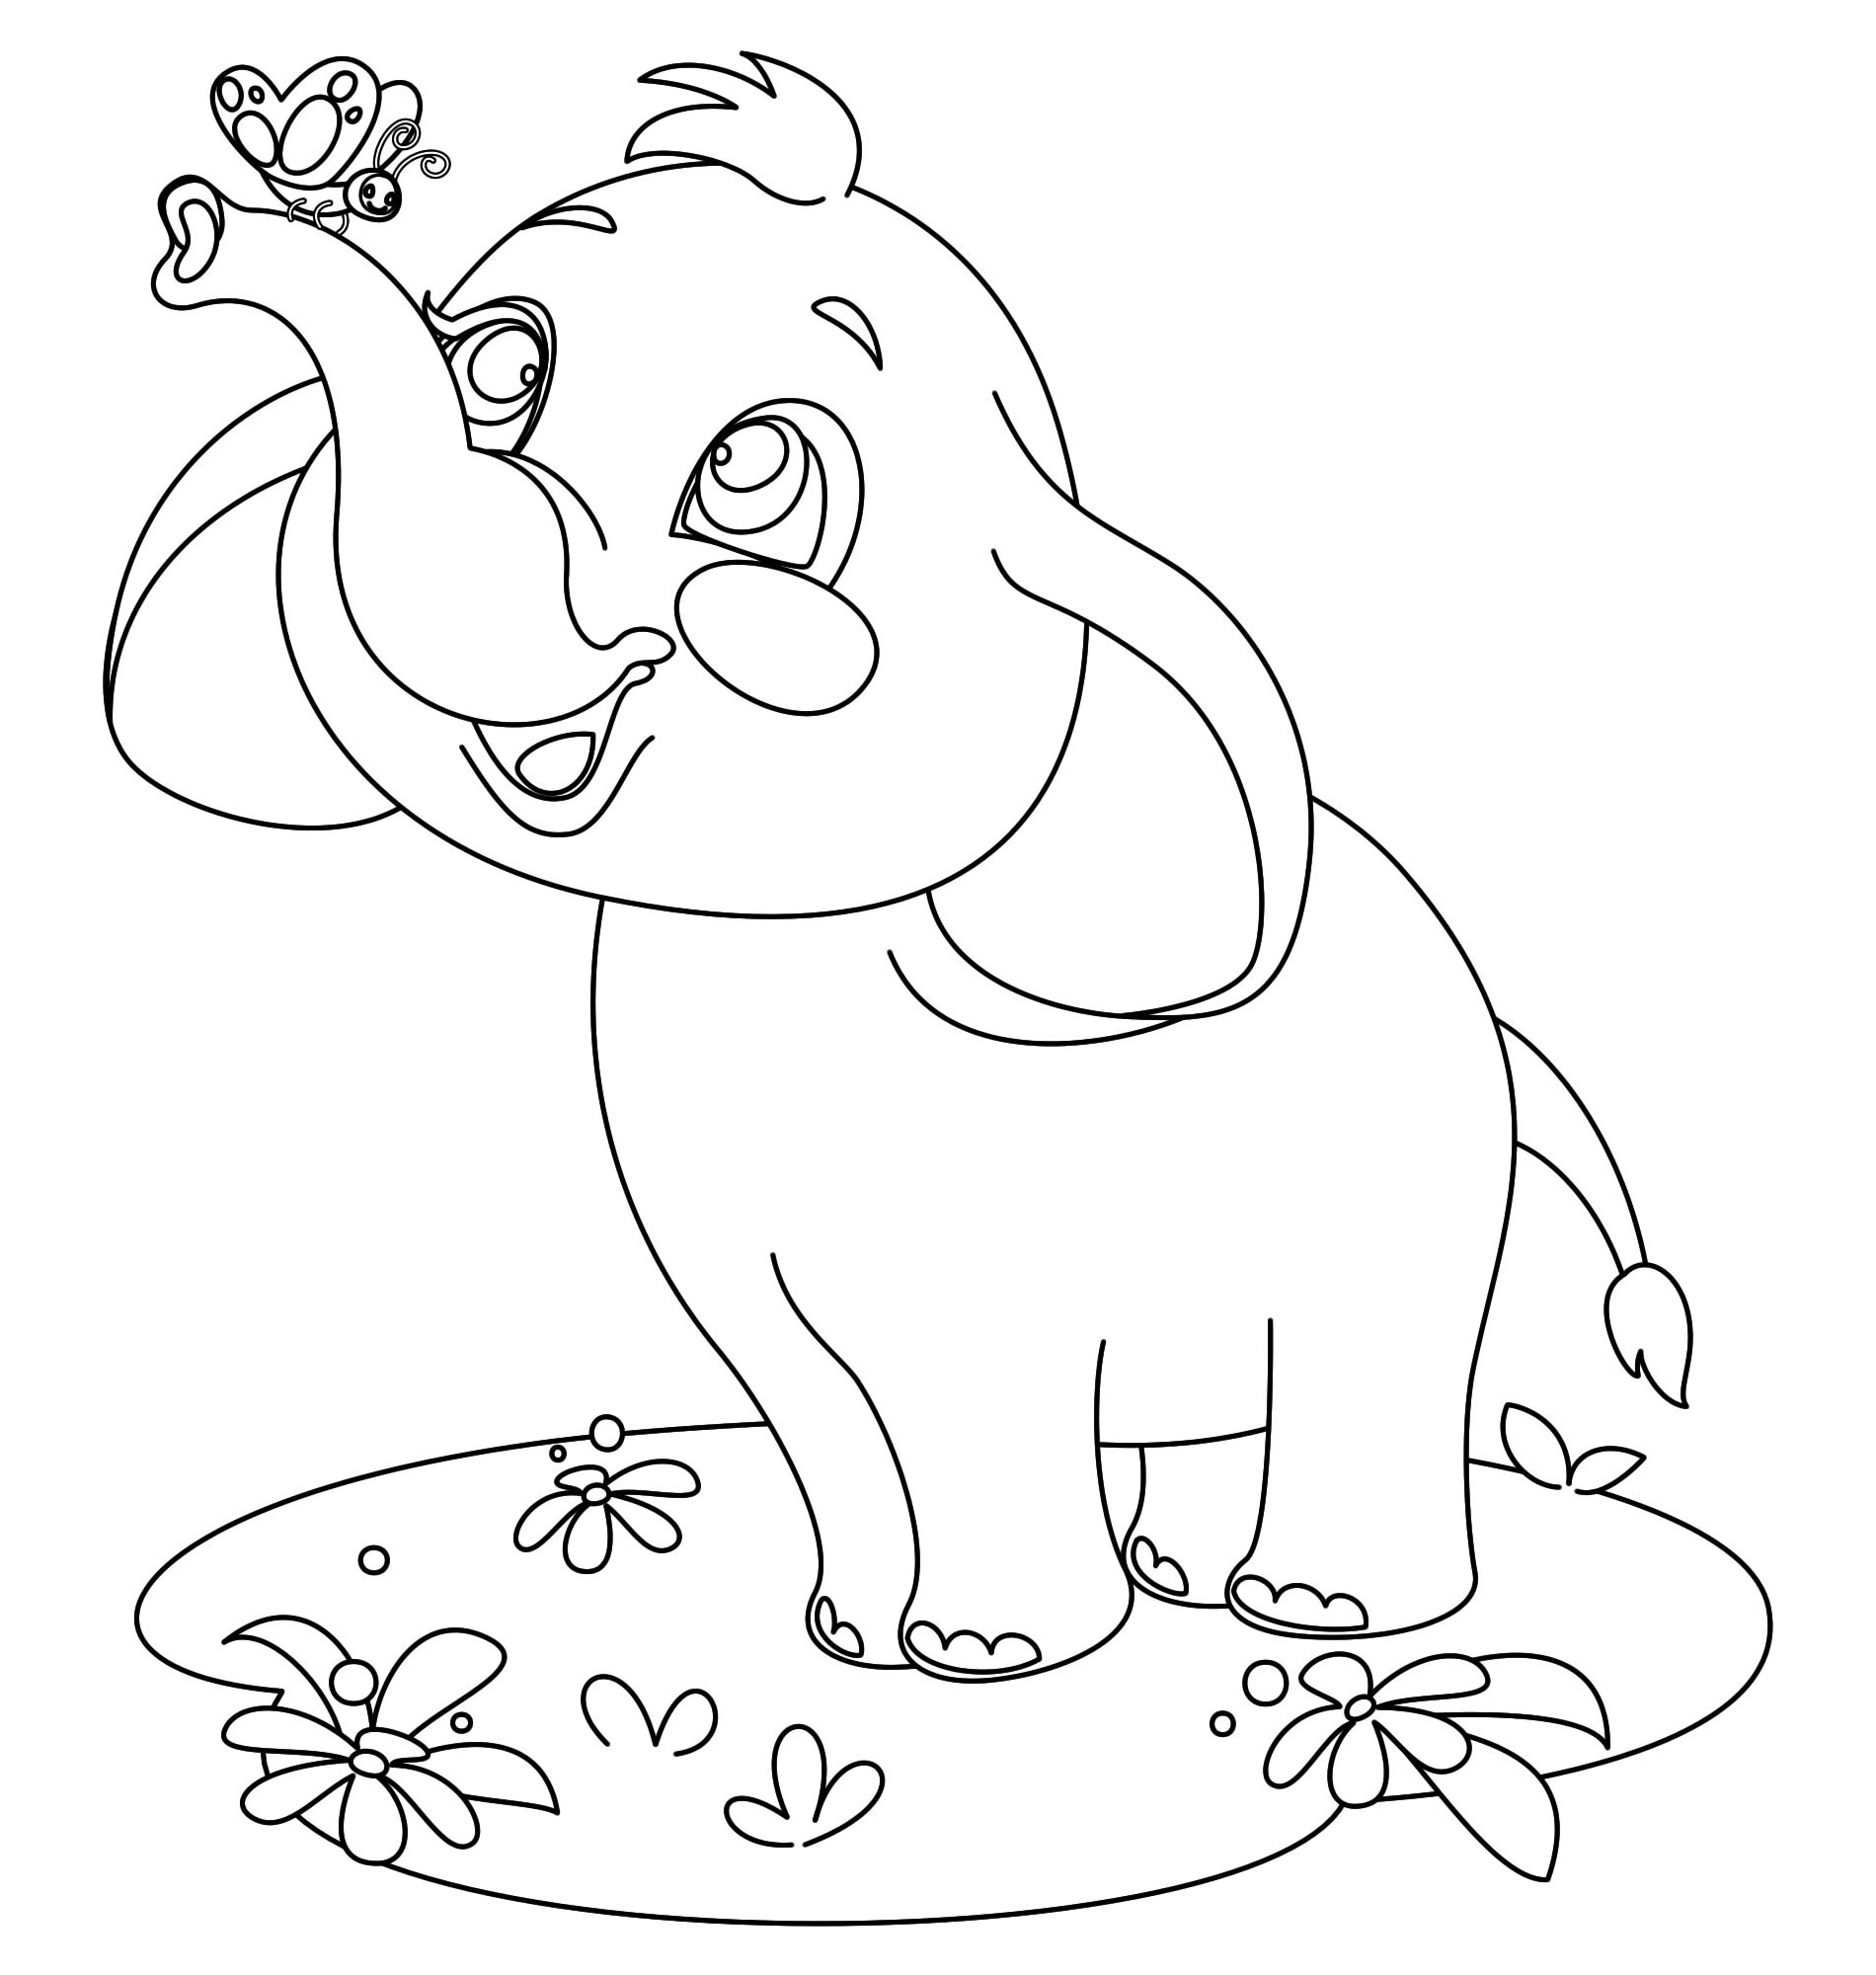 Слон на поляне раскраска для детей